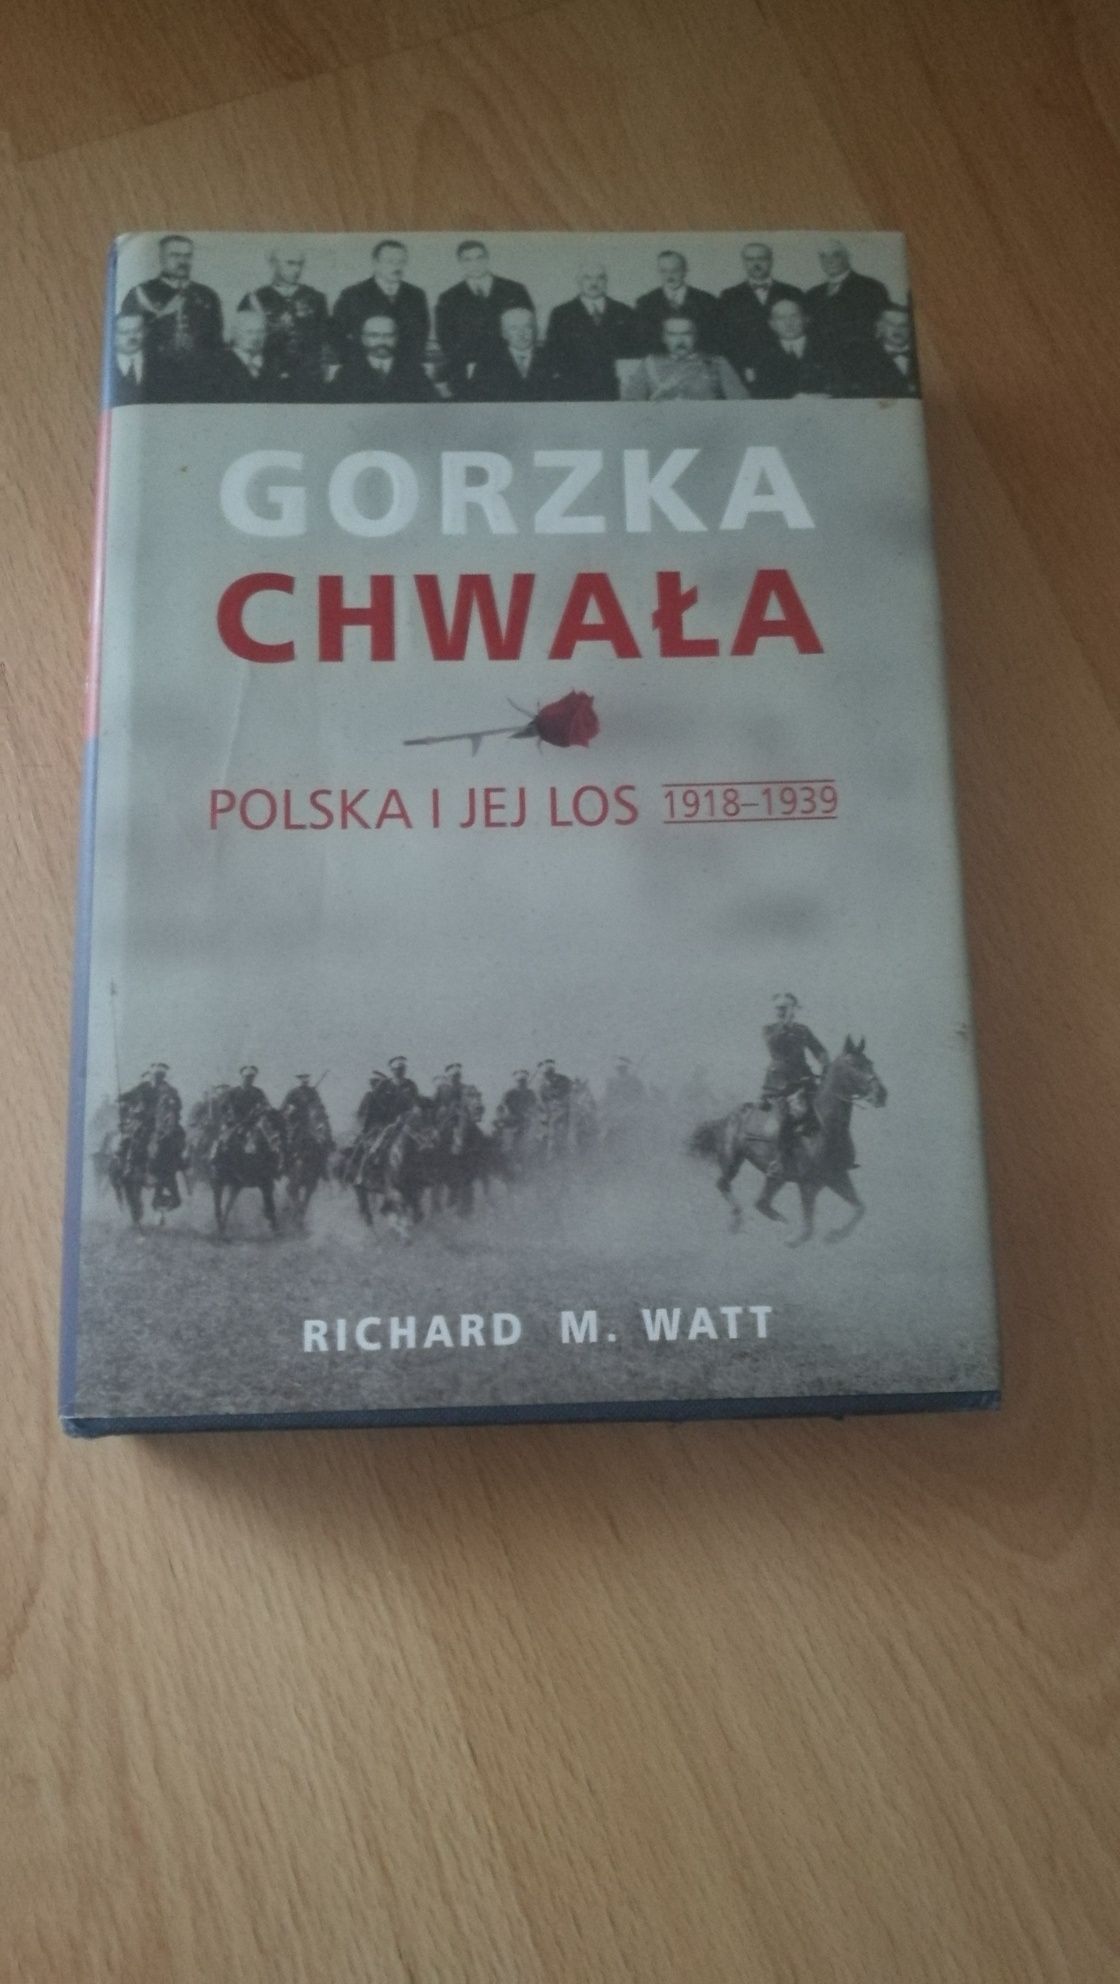 Gorzka chwała - Polska i jej los